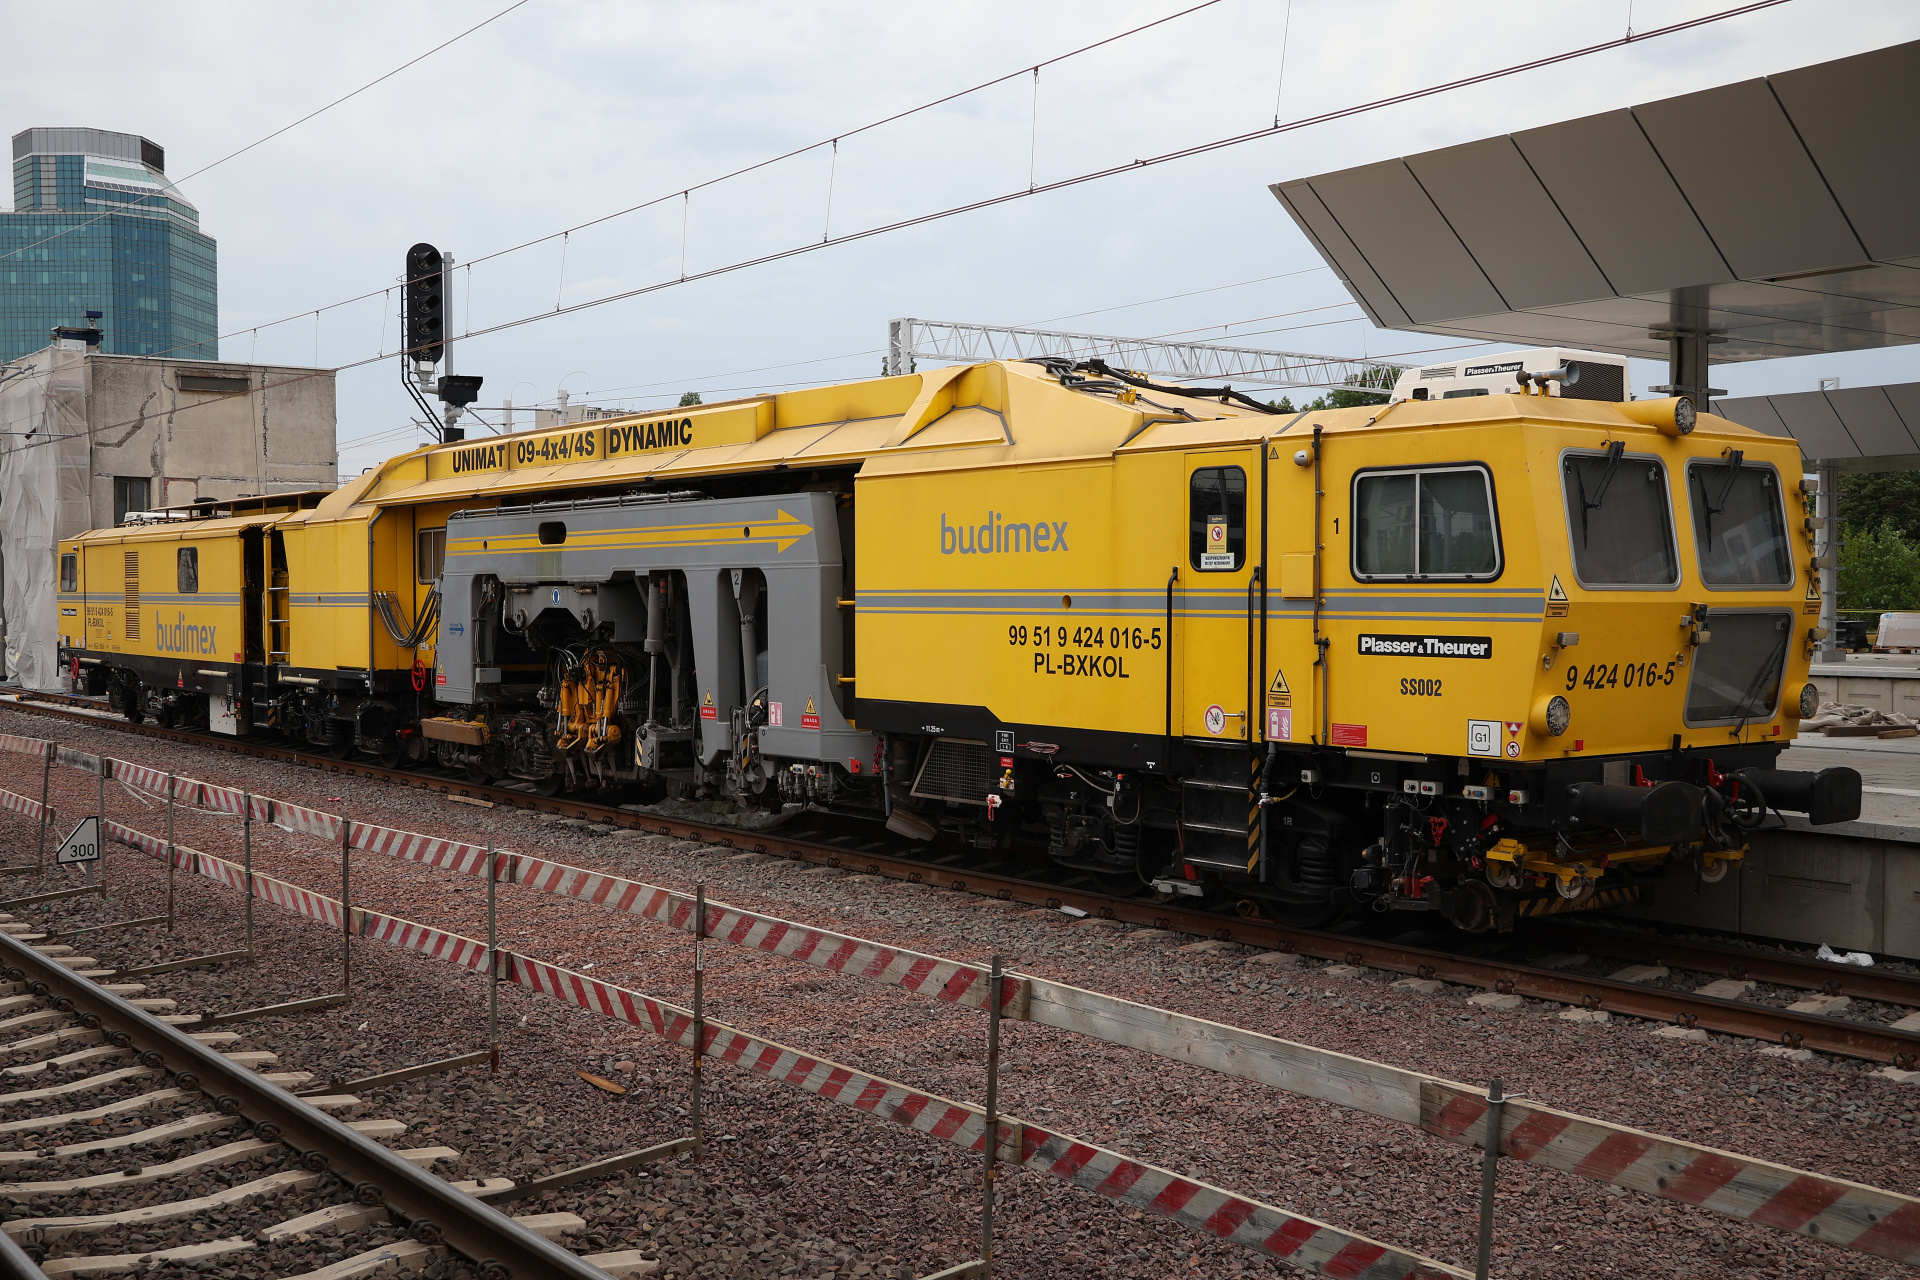 Plasser & Theurer Unimat 09-4x4/4S Dynamic SS002 (Pojazdy » Pociągi i lokomotywy » Techniczne)